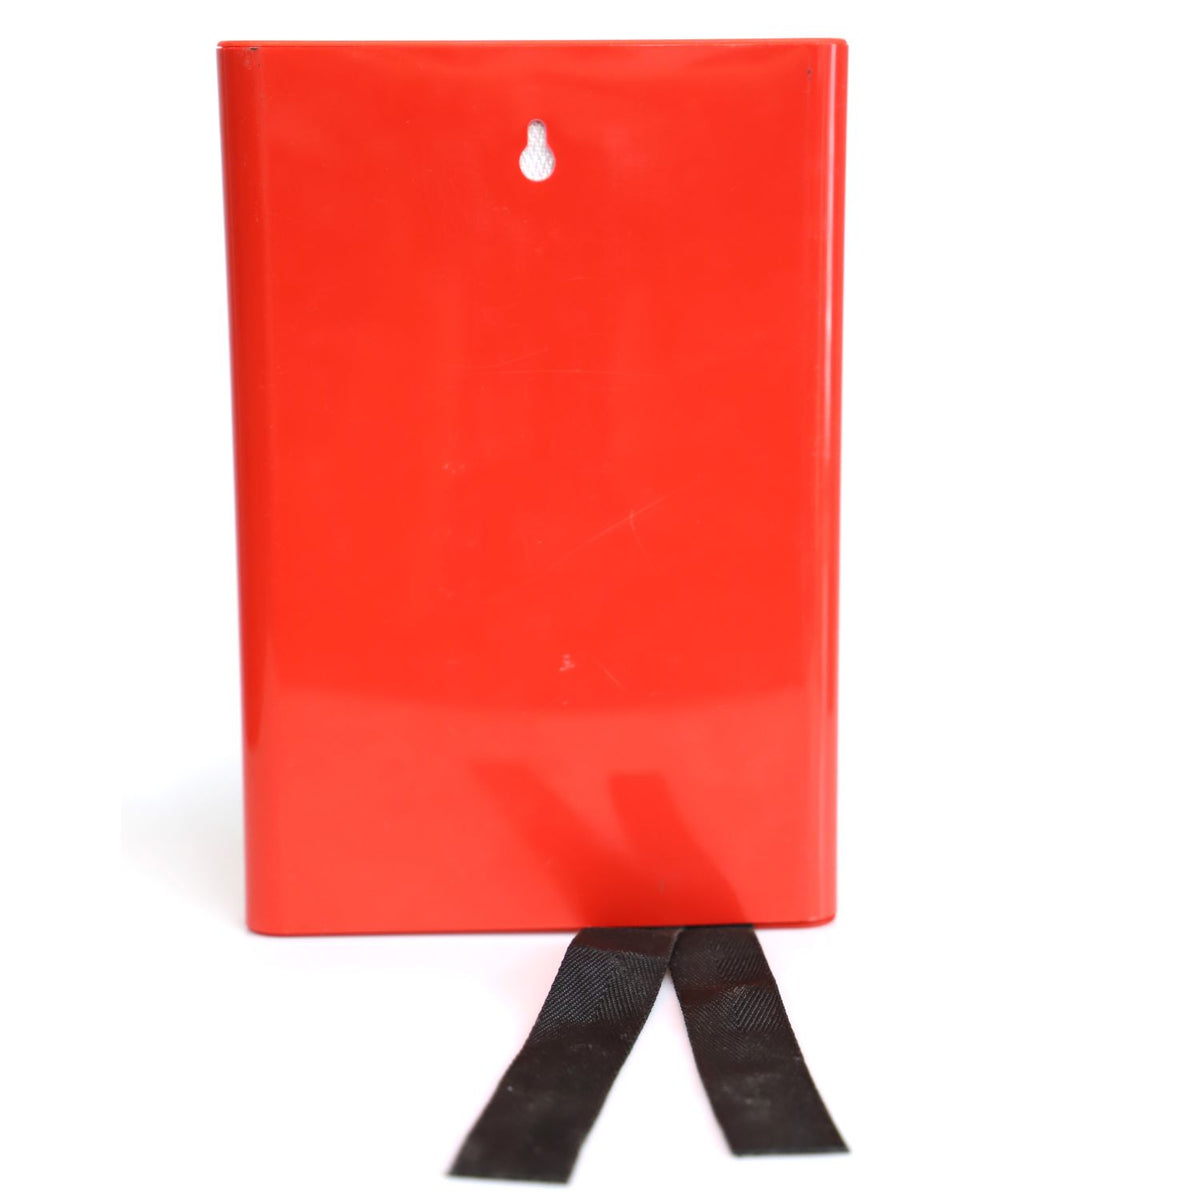 DVM-FBOX-1.2x1.2: Feuerlöschdecke im Karton, Deckengröße 1.2 x 1.2 m